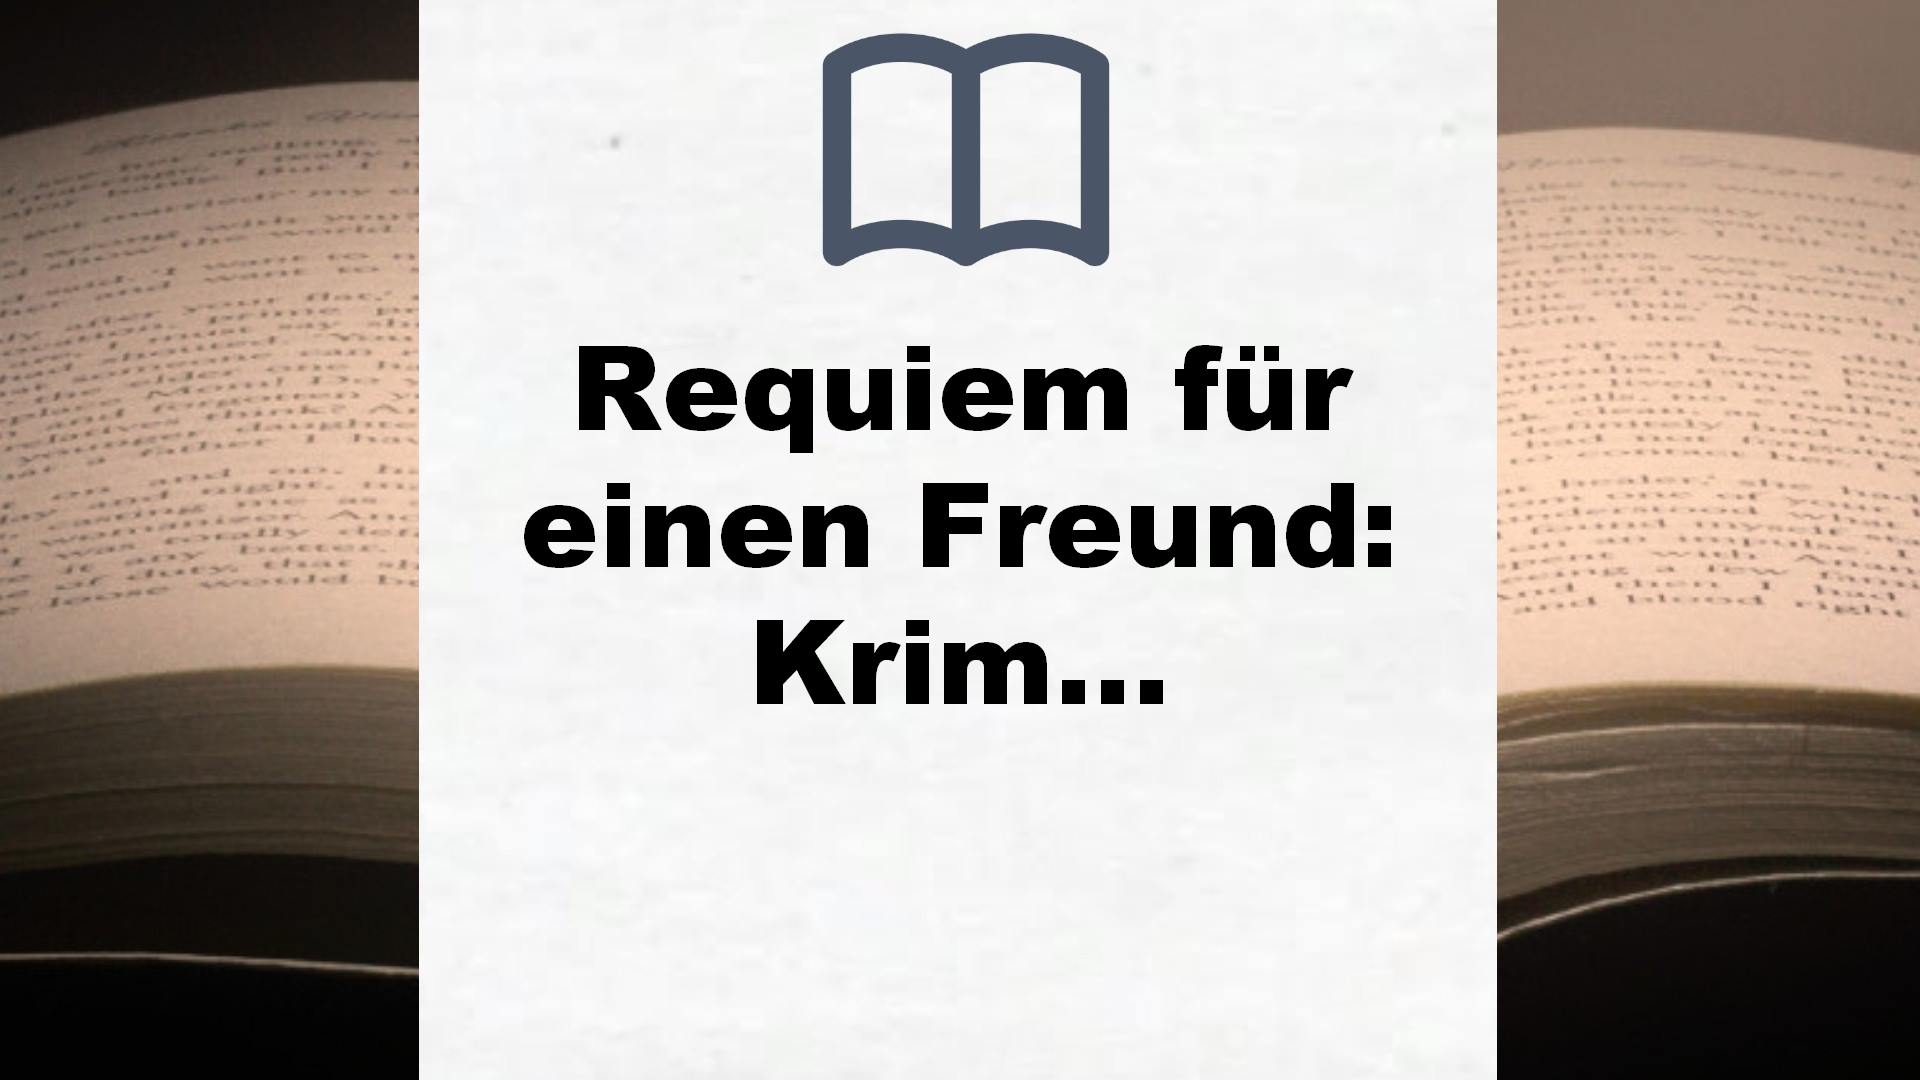 Requiem für einen Freund: Kriminalroman (Joachim Vernau, Band 6) – Buchrezension